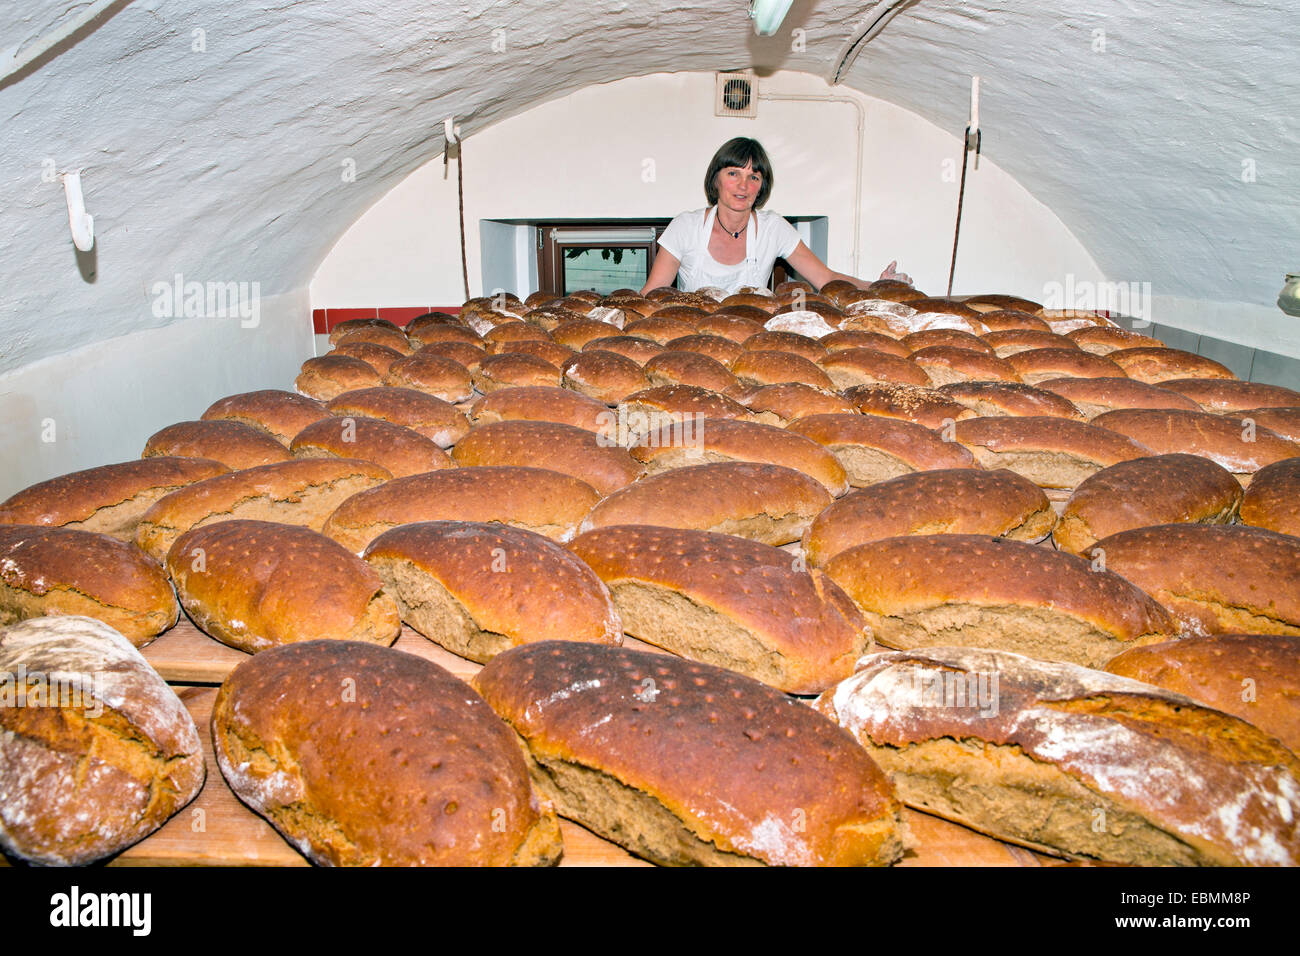 Bauern machen Brot in ihre eigene Bäckerei auf dem Bauernhof, so genannte "Brot Himmel", Tirol, Österreich Stockfoto